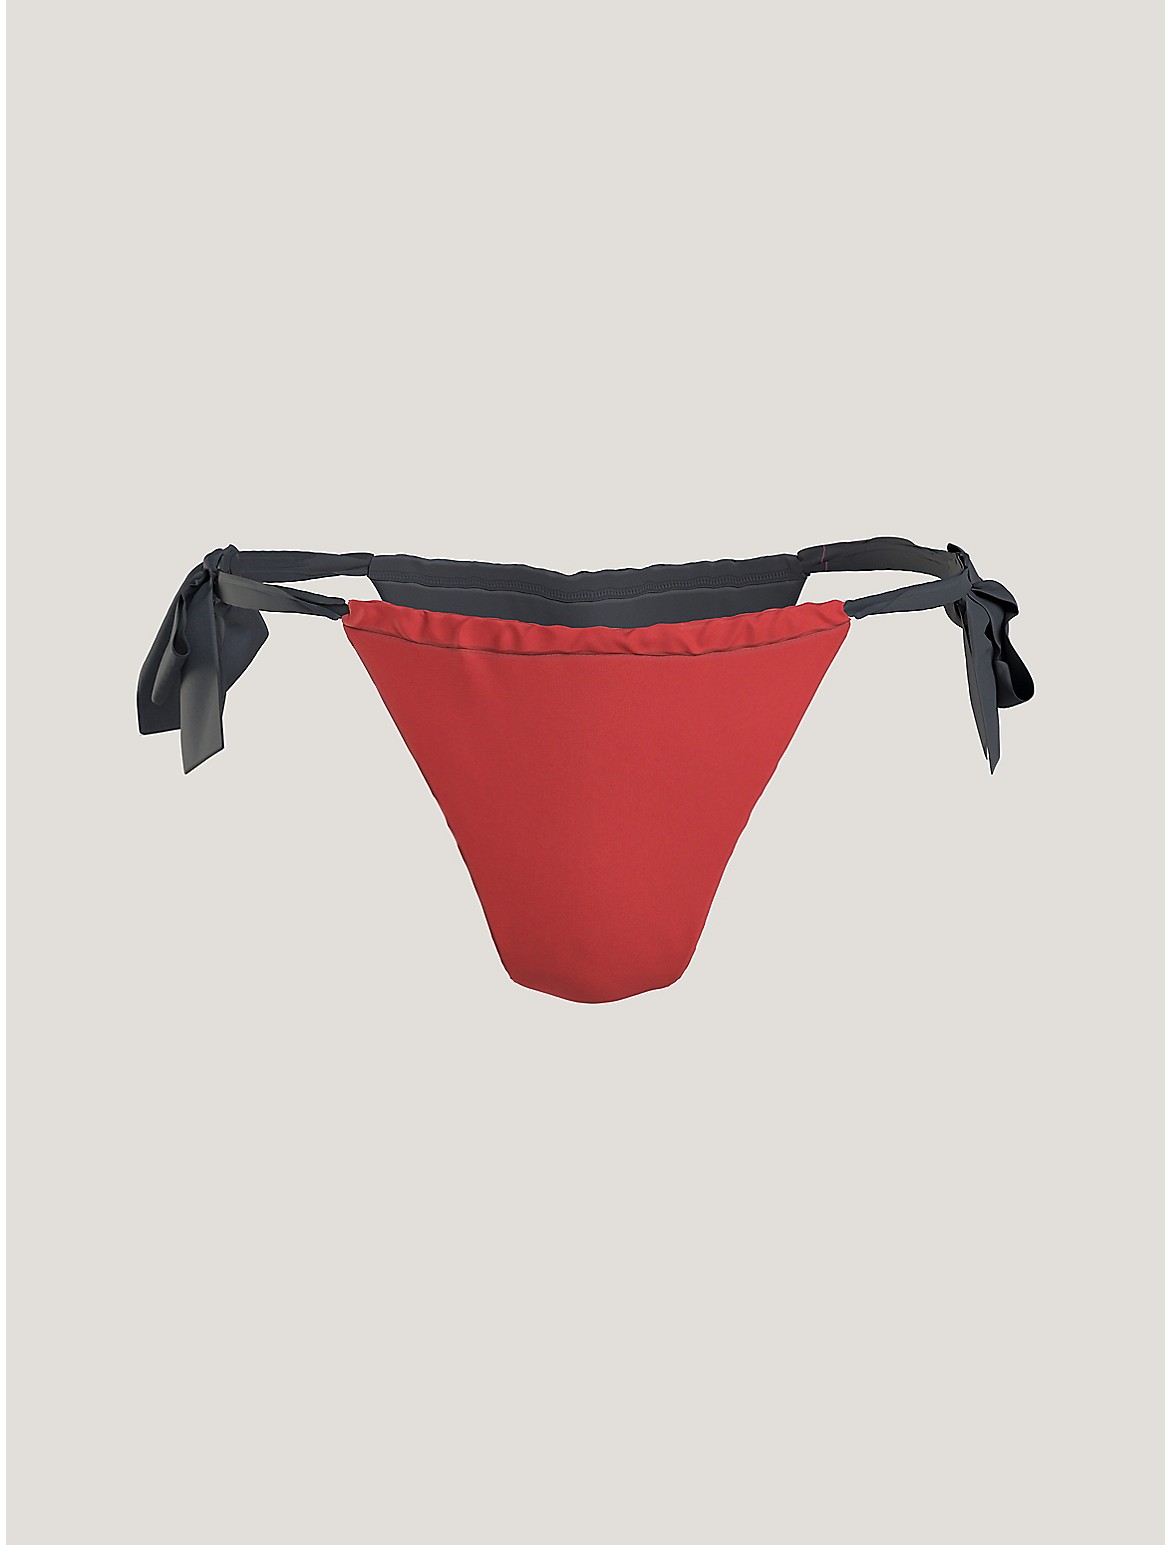 Tommy Hilfiger Women's Colorblock Side-Tie Bikini Bottom